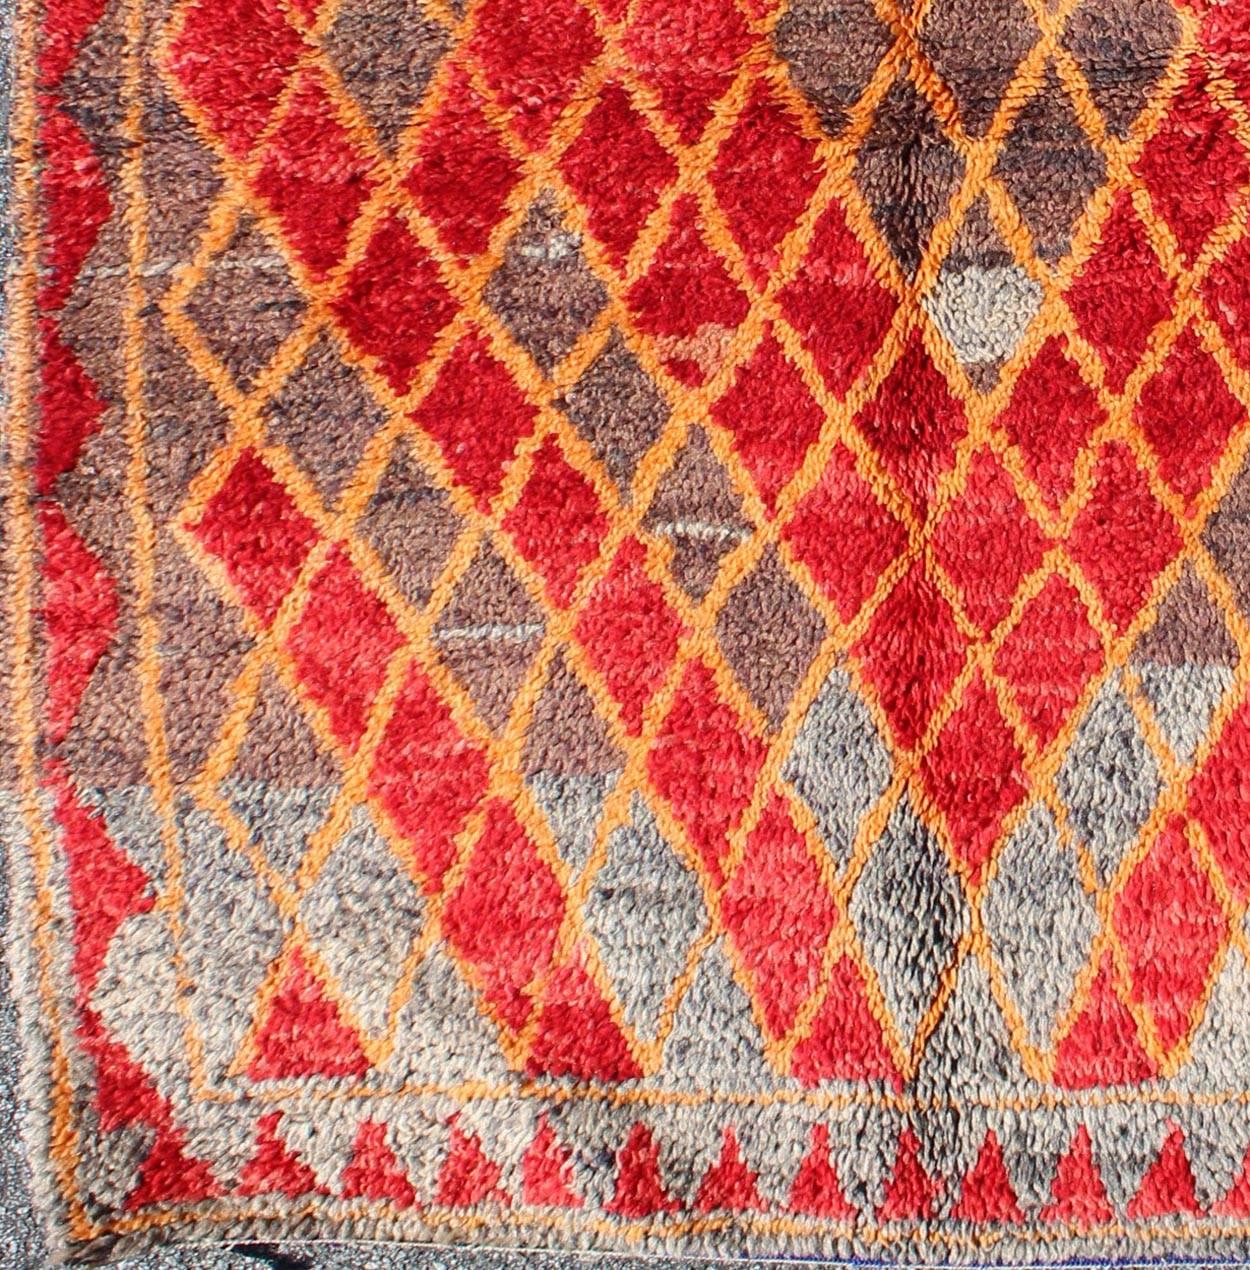 Marokkanischer Teppich aus der Mitte des Jahrhunderts mit orangefarbenen, roten, braunen Diamanten und blauen Fransen. Keivan Woven Arts /  teppich sk-628, herkunftsland / typ: Marokko / Tribal, etwa Mitte des 20. Jahrhunderts

Dieser wunderbare